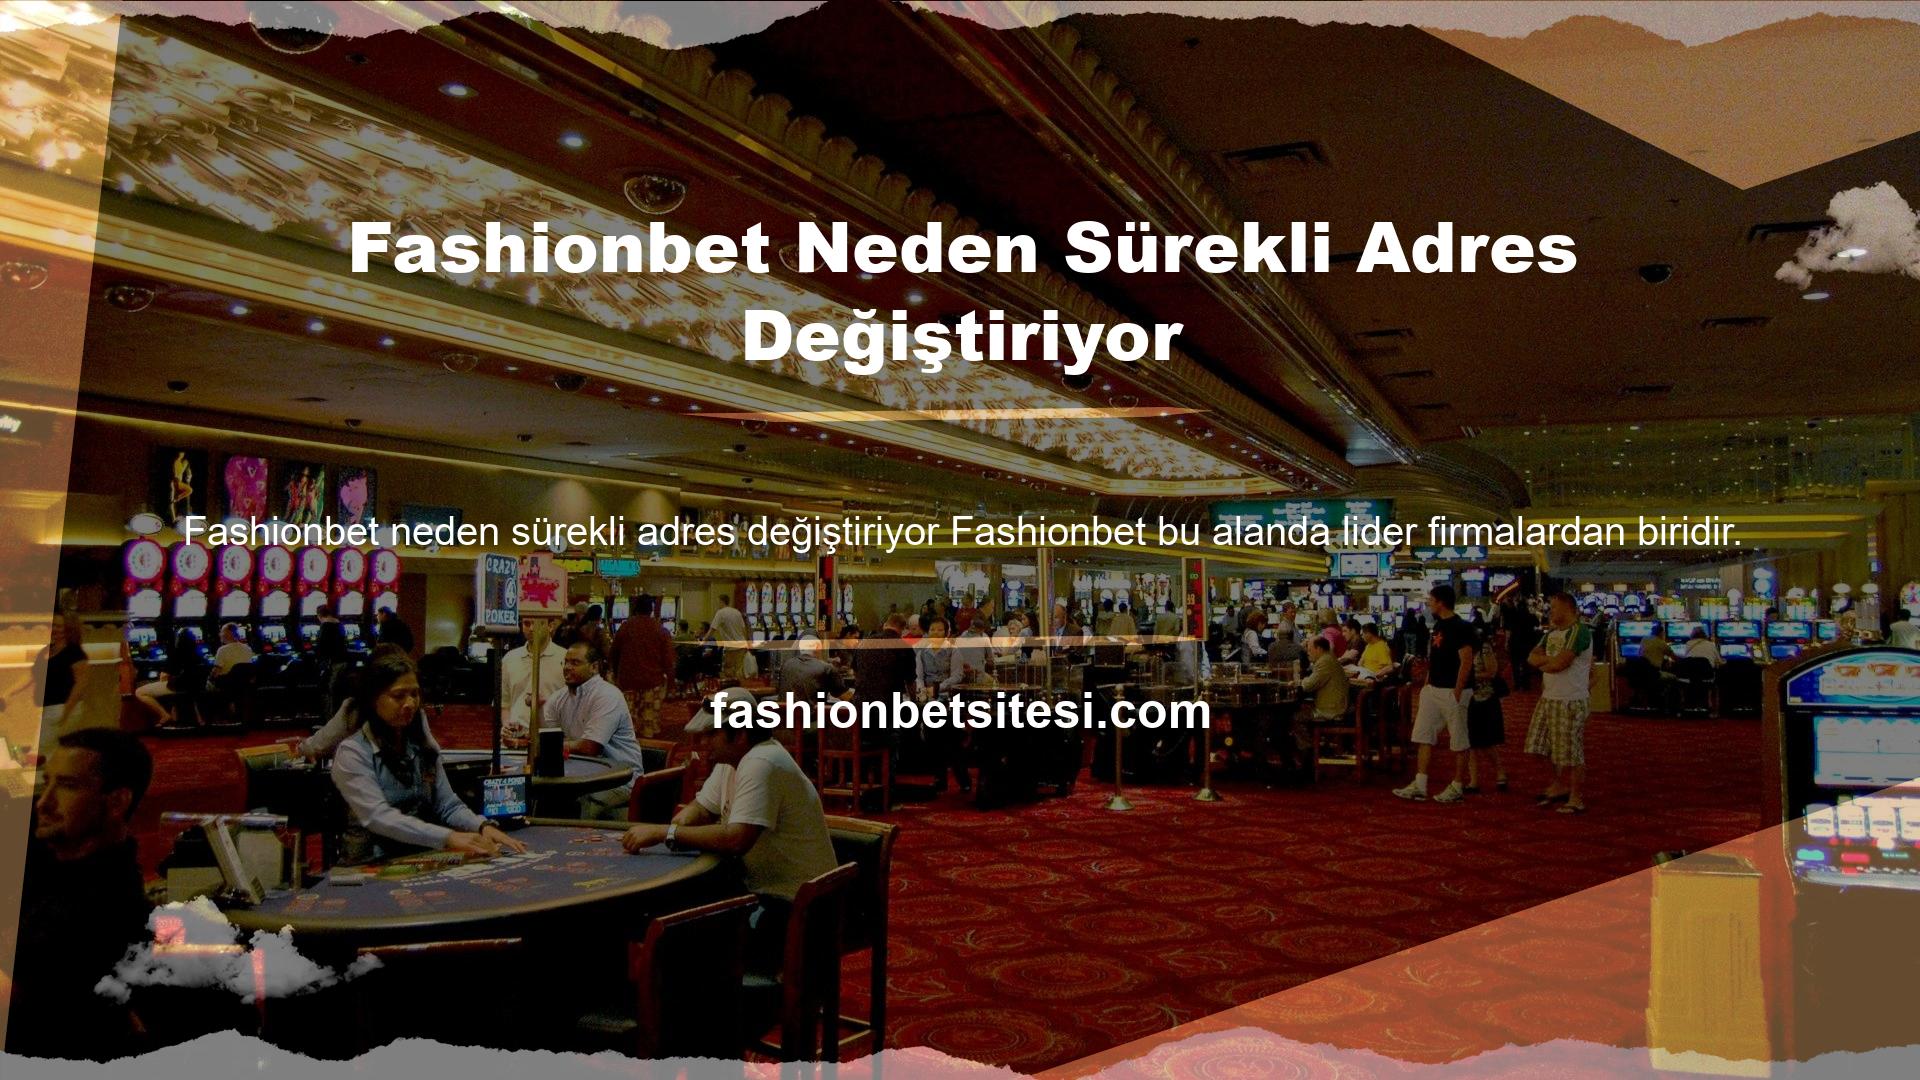 Fashionbet yurtdışında yerleşik olduğundan, Türkiye'nin göçmenlik düzenlemelerindeki değişikliklerin bir parçası olarak geçici bir adres değişikliği prosedürü başlattı